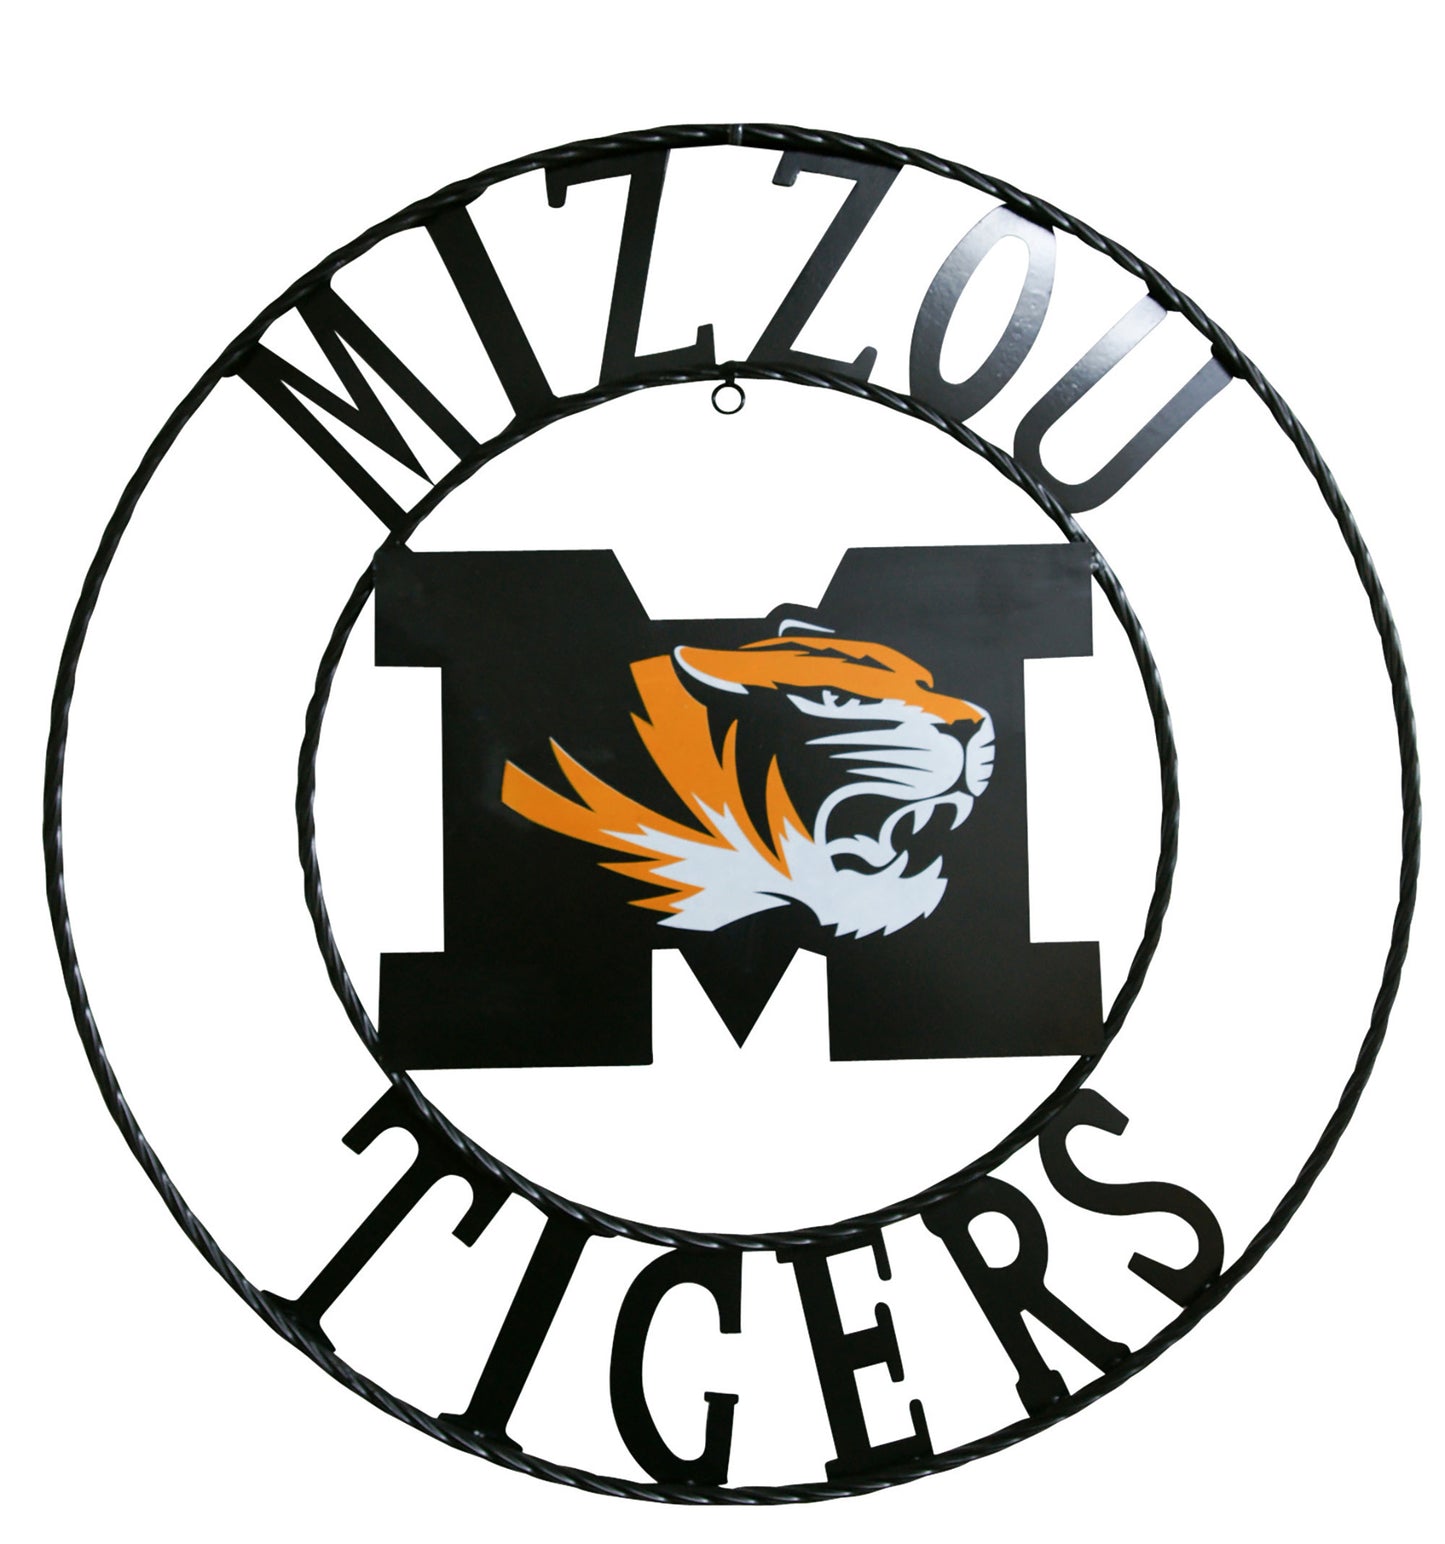 University of Missouri Mizzou Tigers Wrought Iron Wall Decor